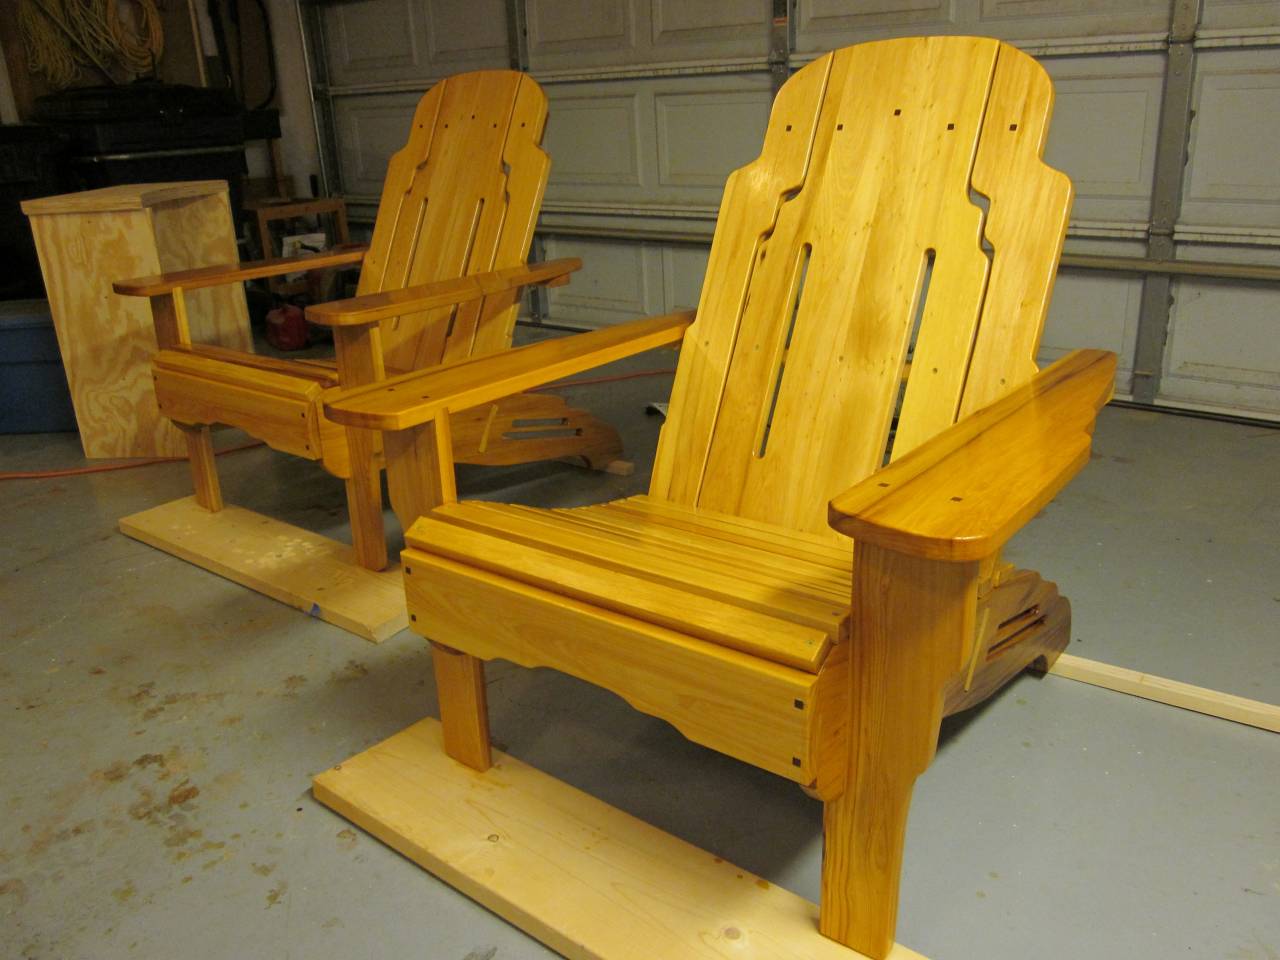 Greene and Greene Adirondak chairs